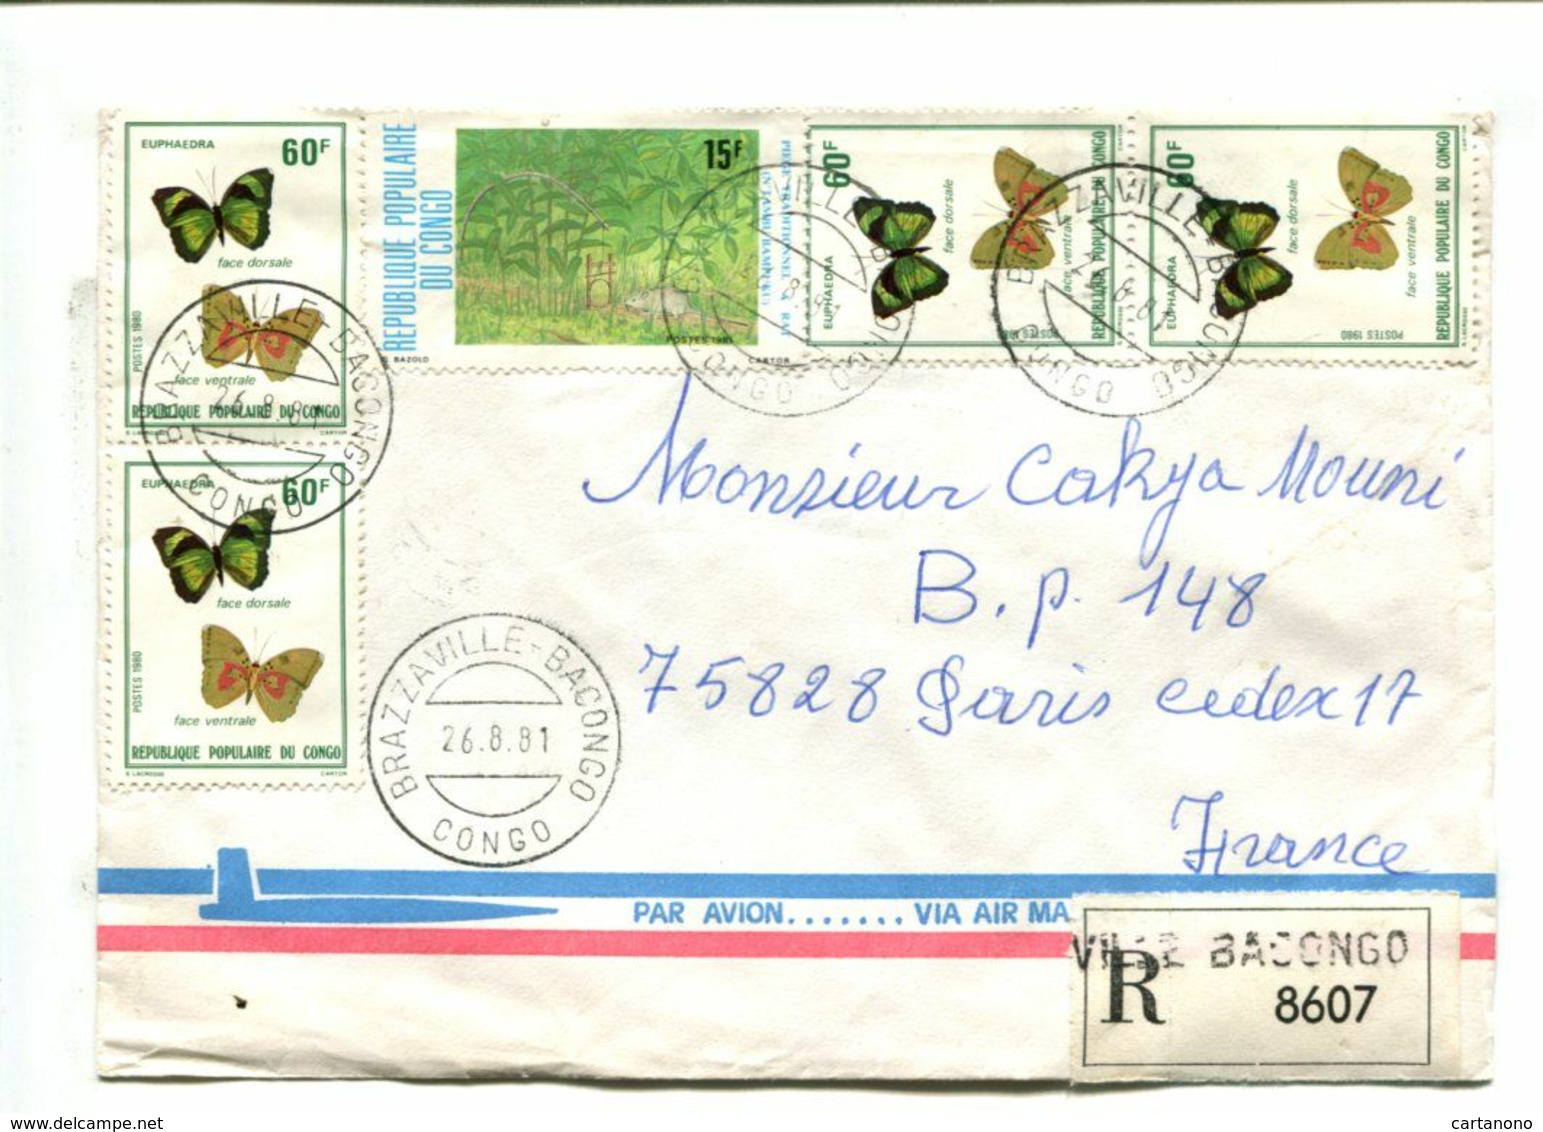 PAPILLONS BUTTERFLY - CONGO 1981 - Affranchissement Multiple Sur Lettre Recommandée - Butterflies